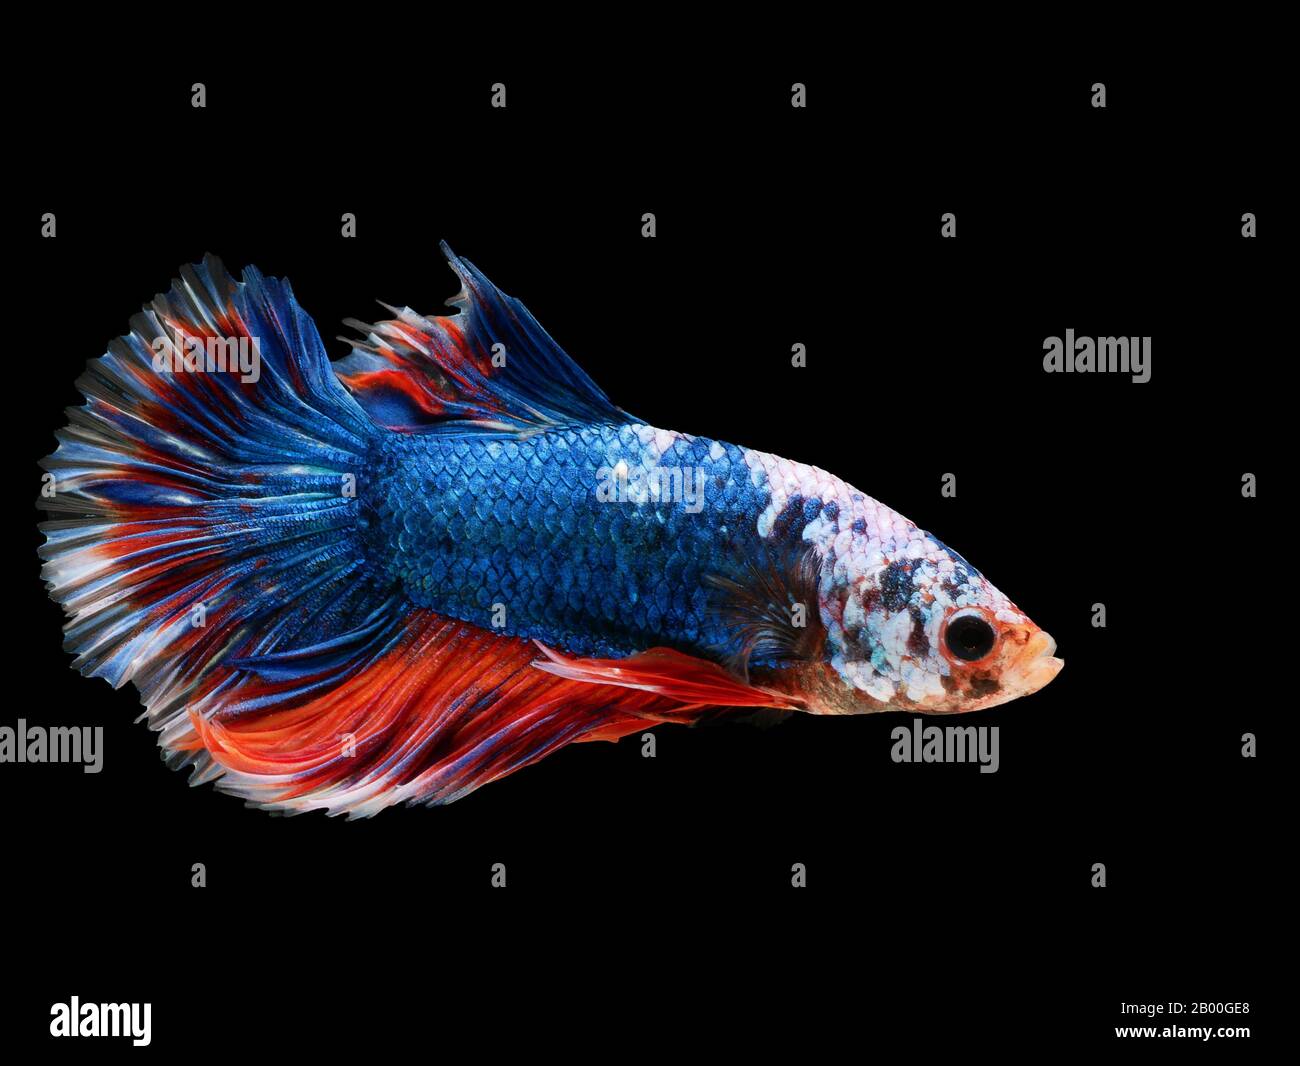 Magnifique poisson thaï bleu foncé luttant contre la natation avec de longues nageoires et un gène rouge blanc coloré à longue queue. Lutte contre le poisson isolé sur fond noir. Banque D'Images